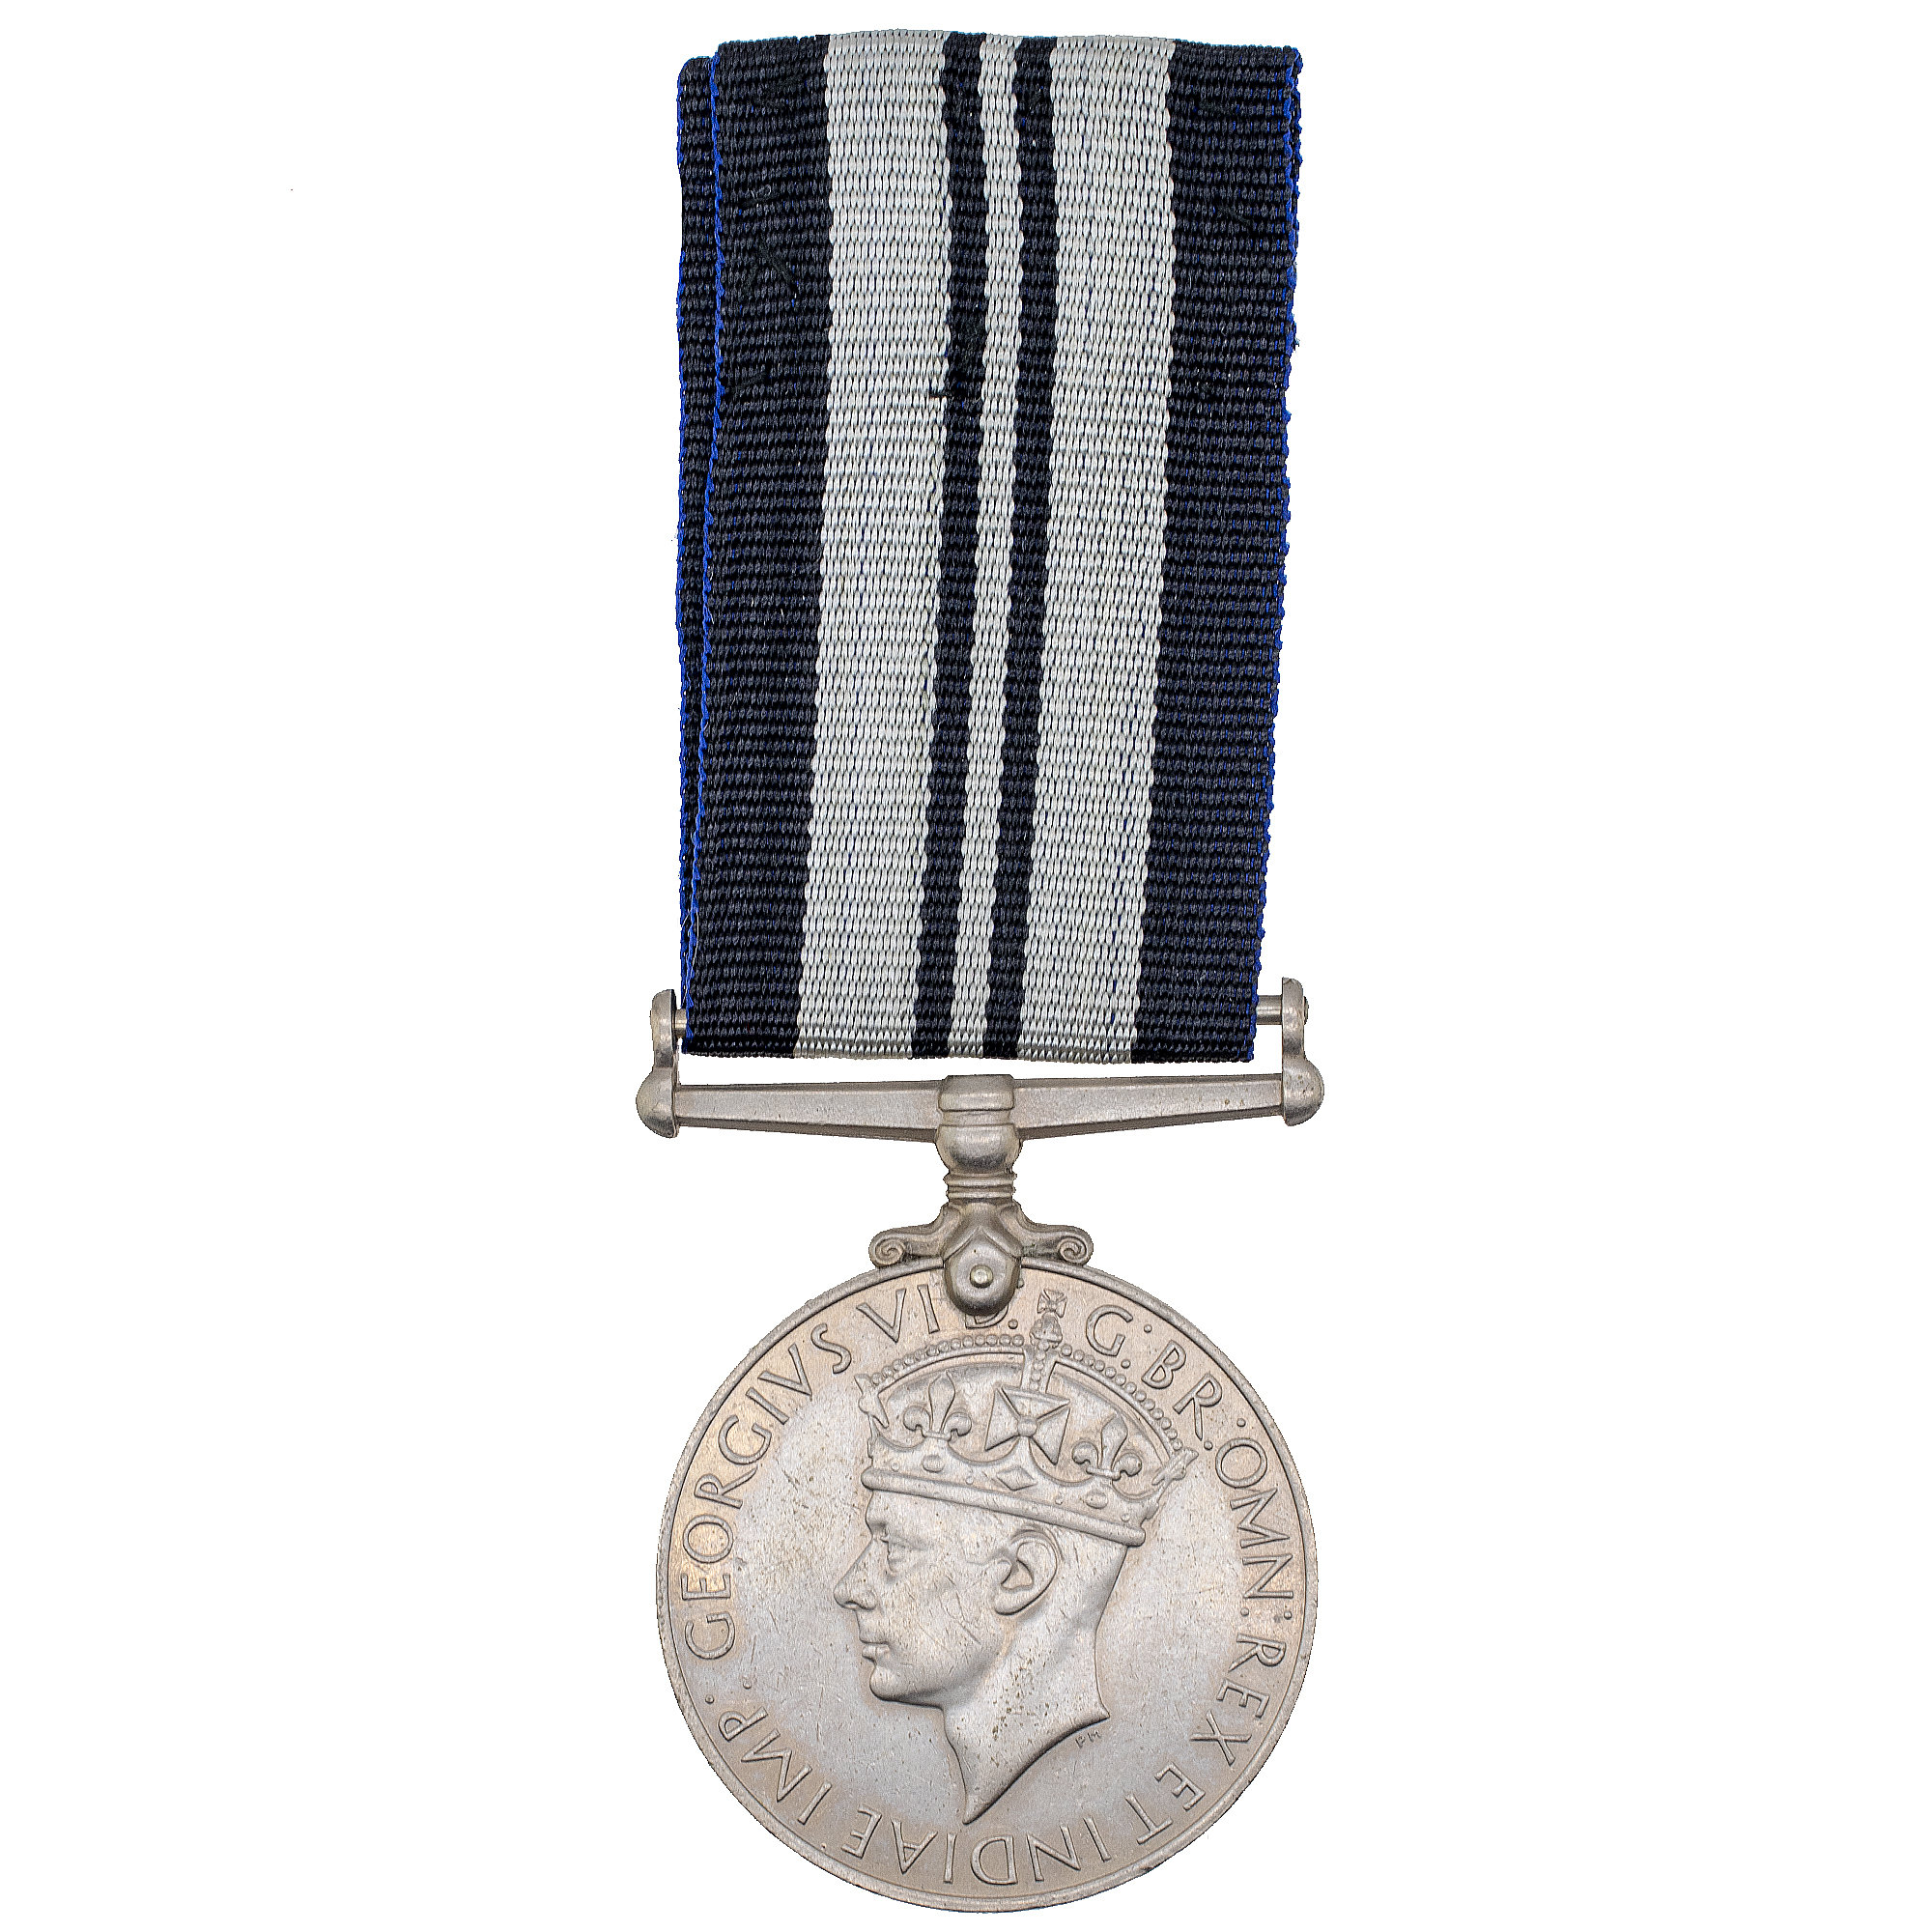 Великобритания. Медаль за службу в Индии 1939 - 1945 гг.